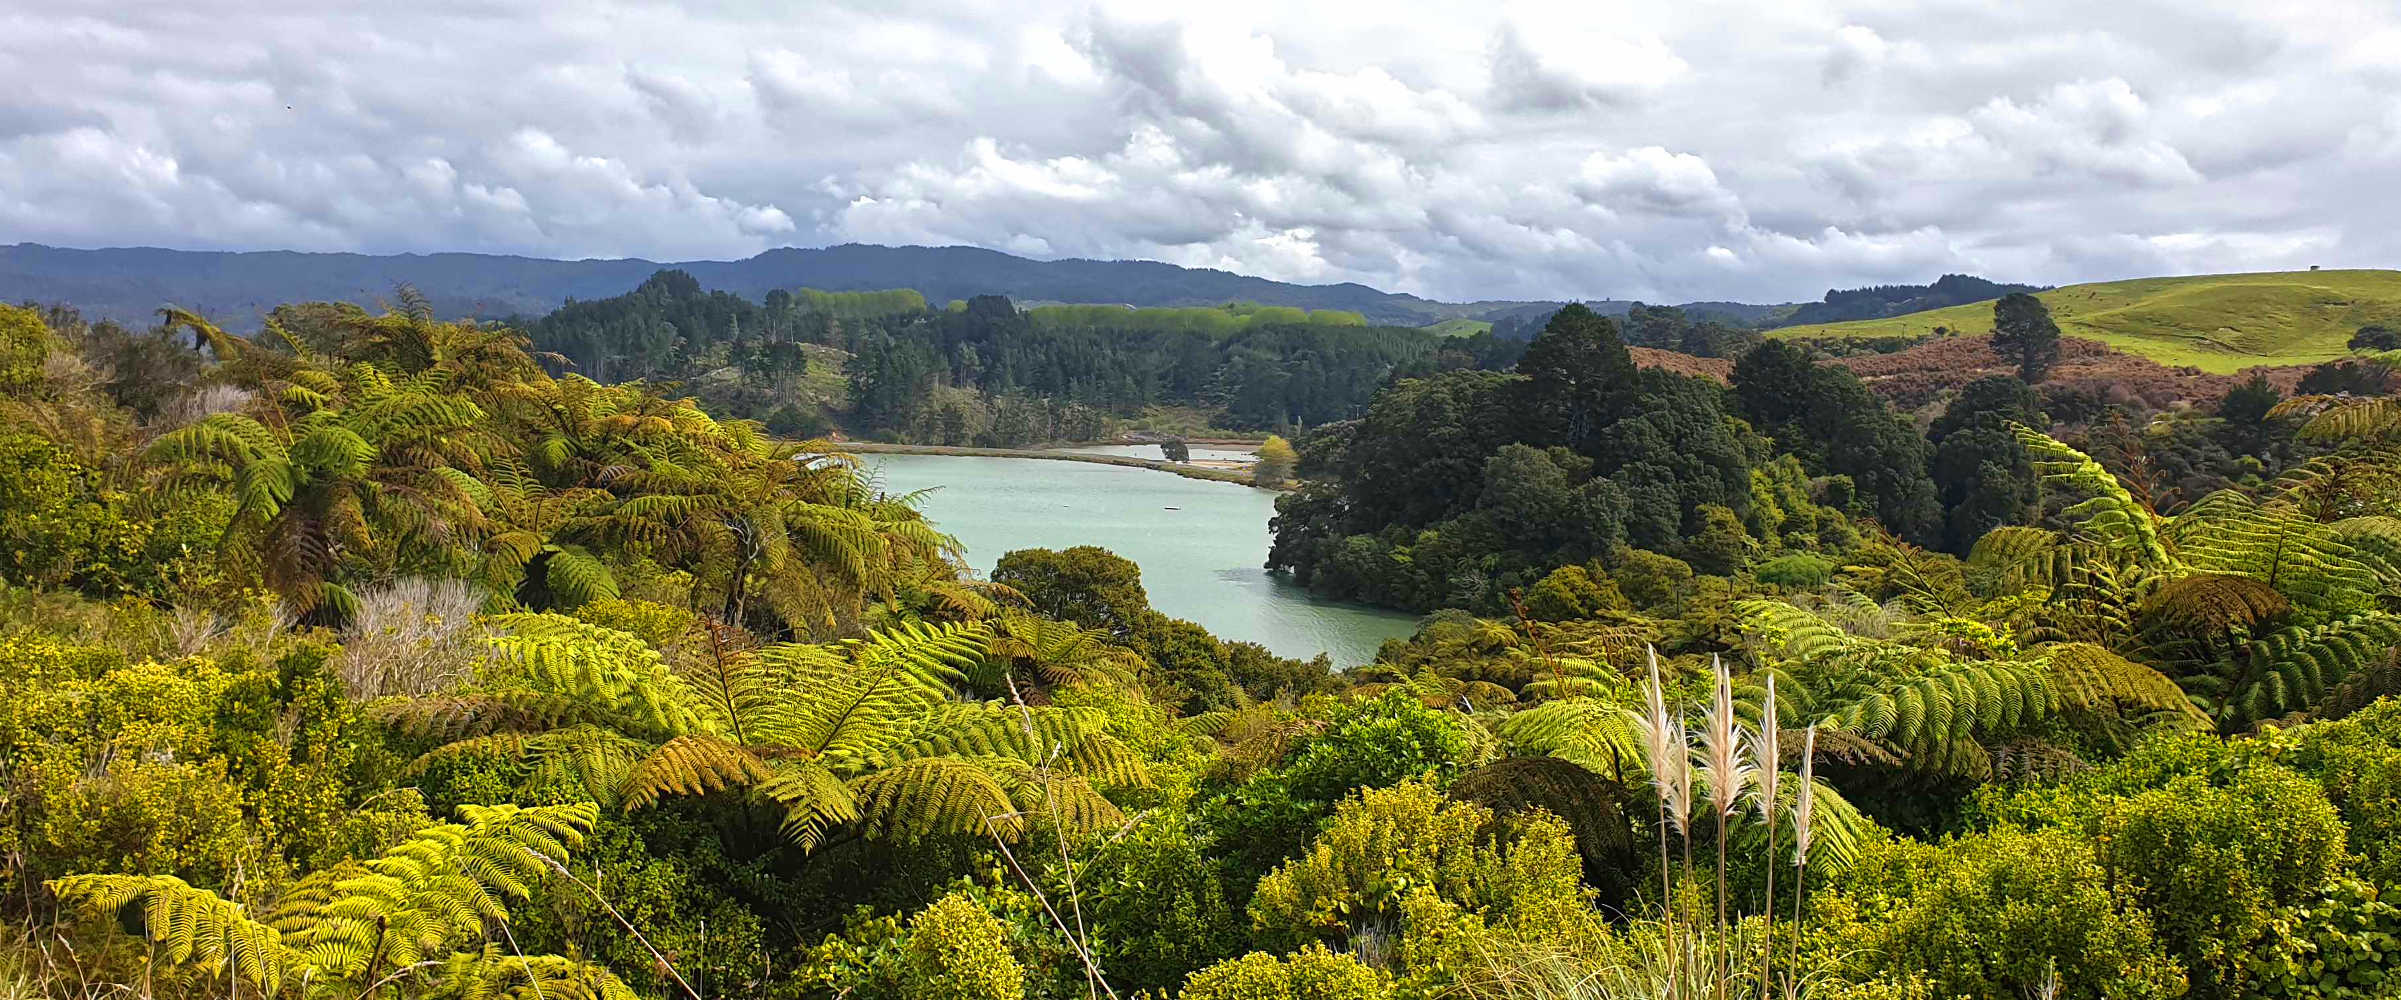 Tauwhare Pa site scenic view of inner waterways, Bay of Plenty, New Zealand